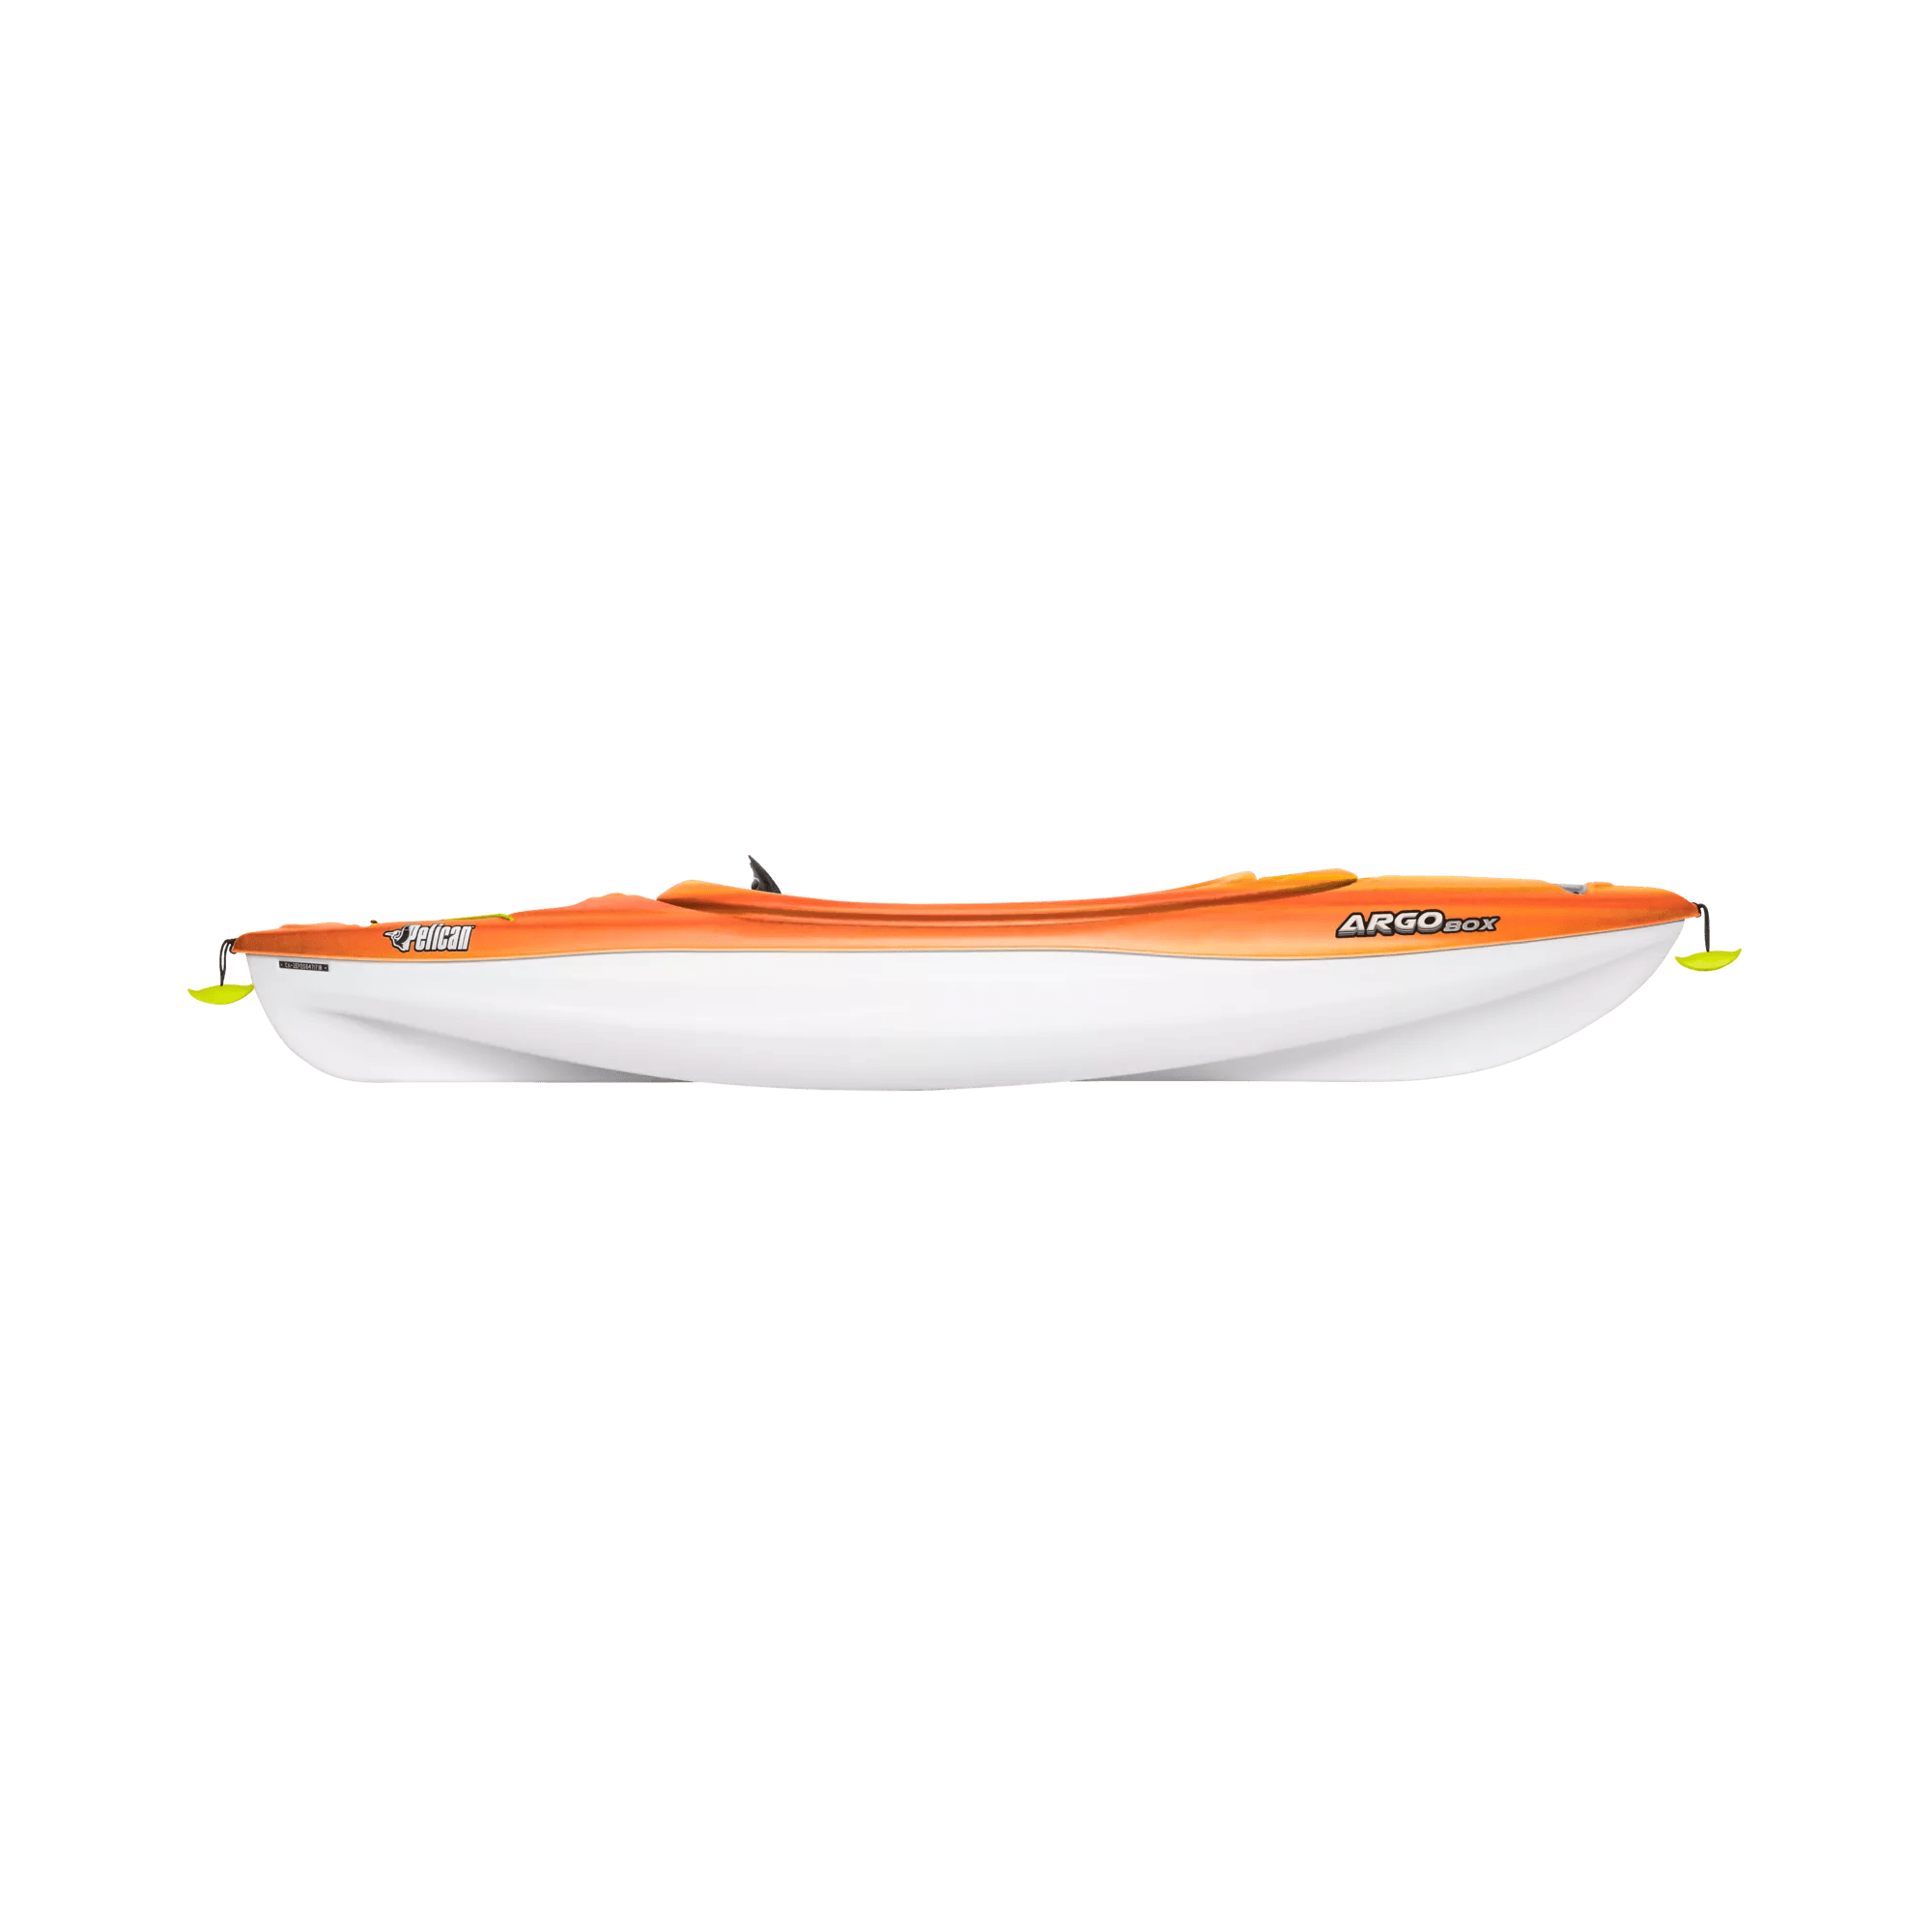 PELICAN - Argo 80X Recreational Kayak - Yellow - KFF08P109-00 - SIDE